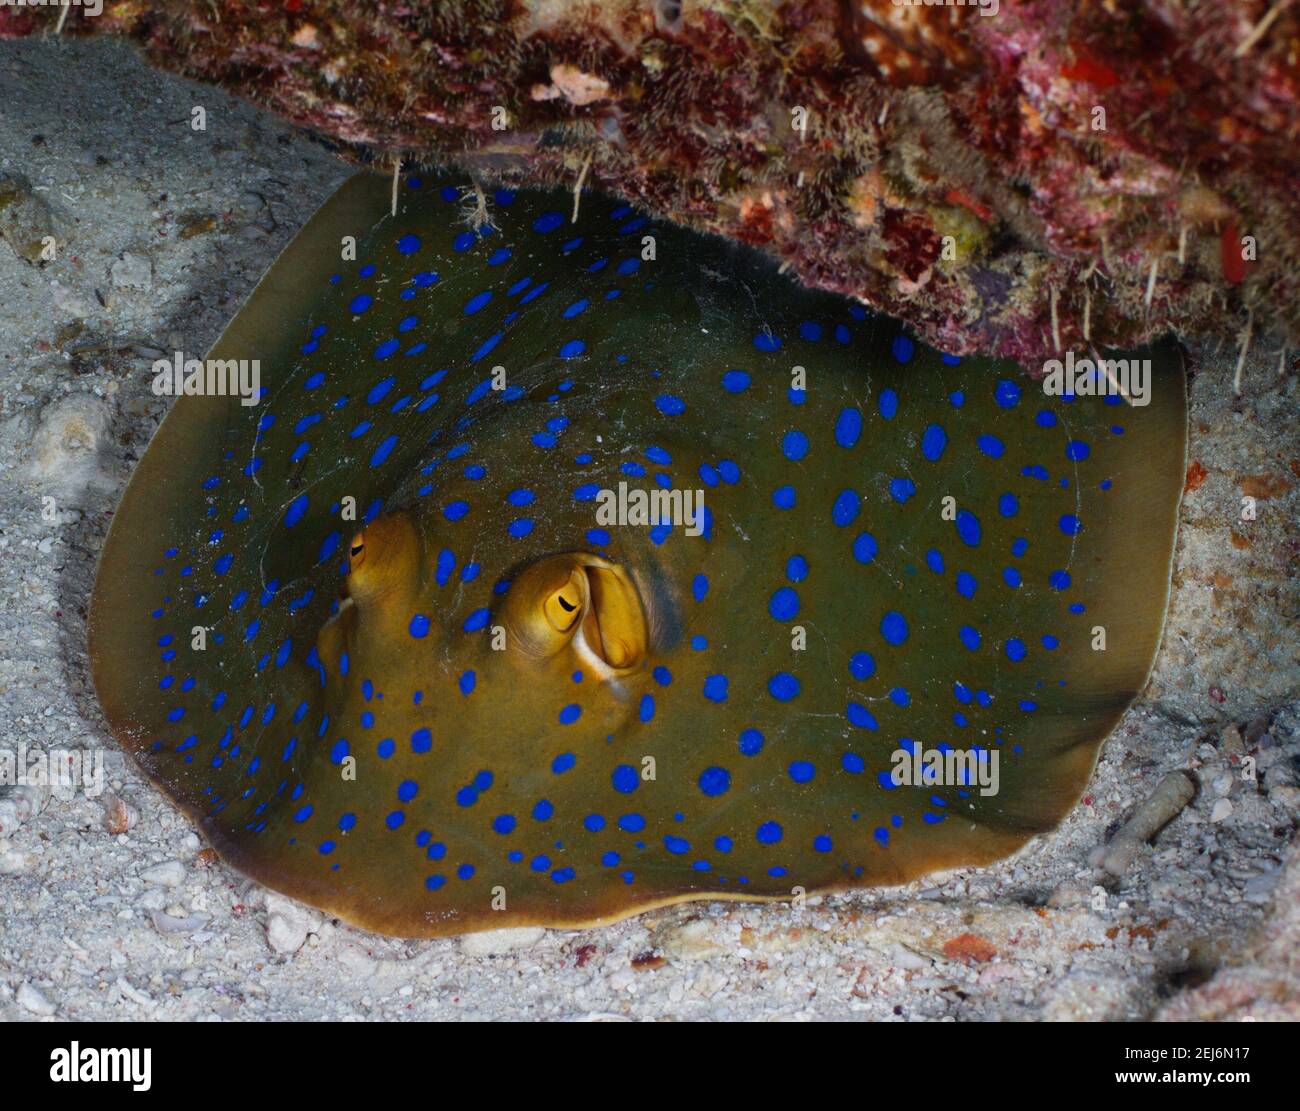 Blue-spotted Fantail Ray (Taeniura lymma). Stock Photo